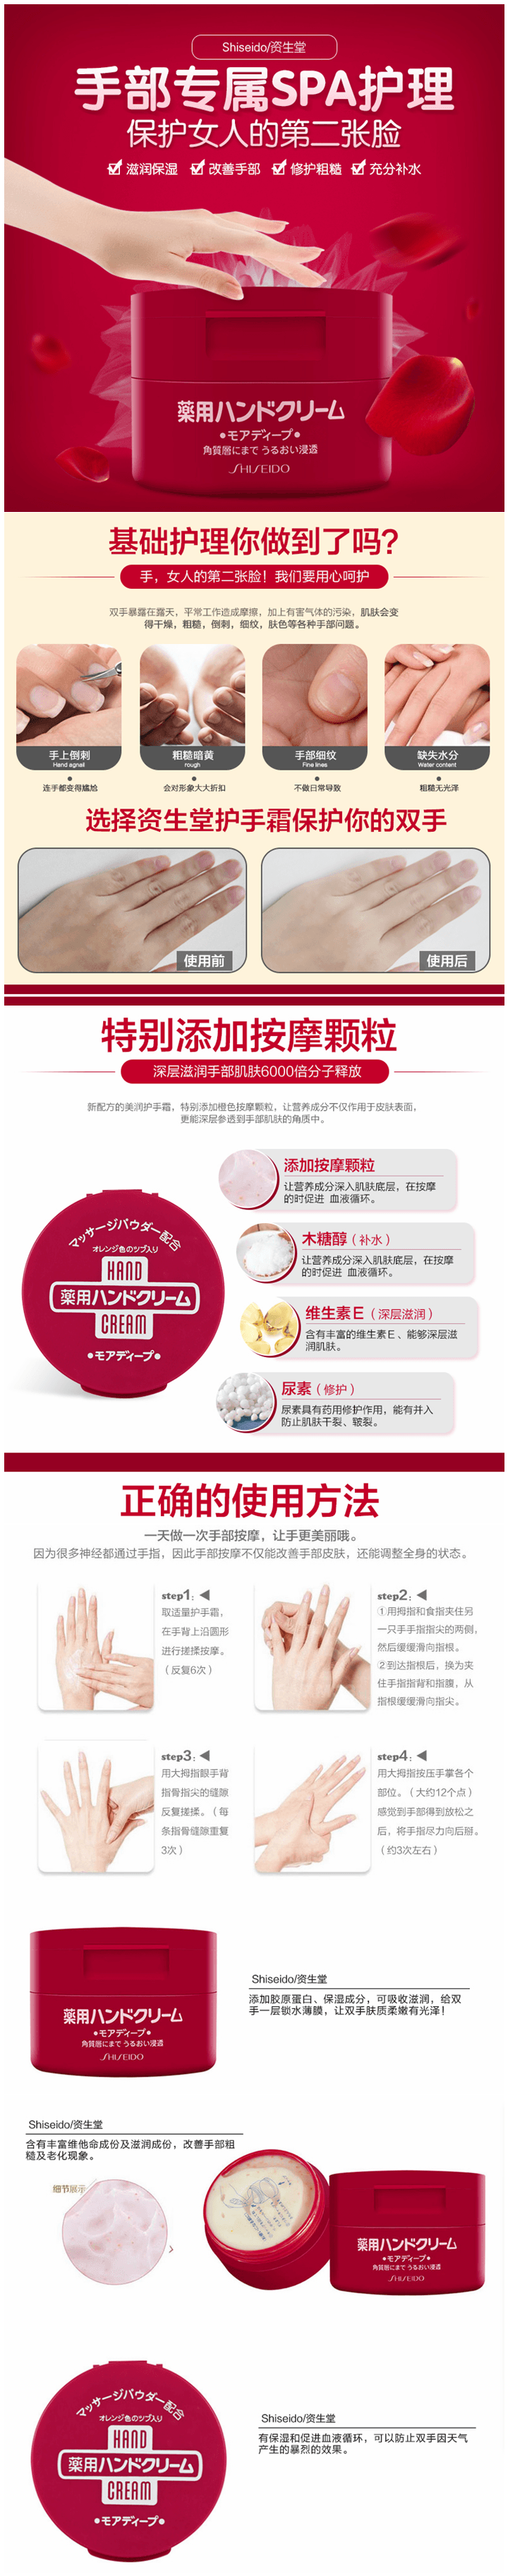 【日本直郵】日本 SHISEIDO 資生堂 藥用尿素水潤護手霜 100g